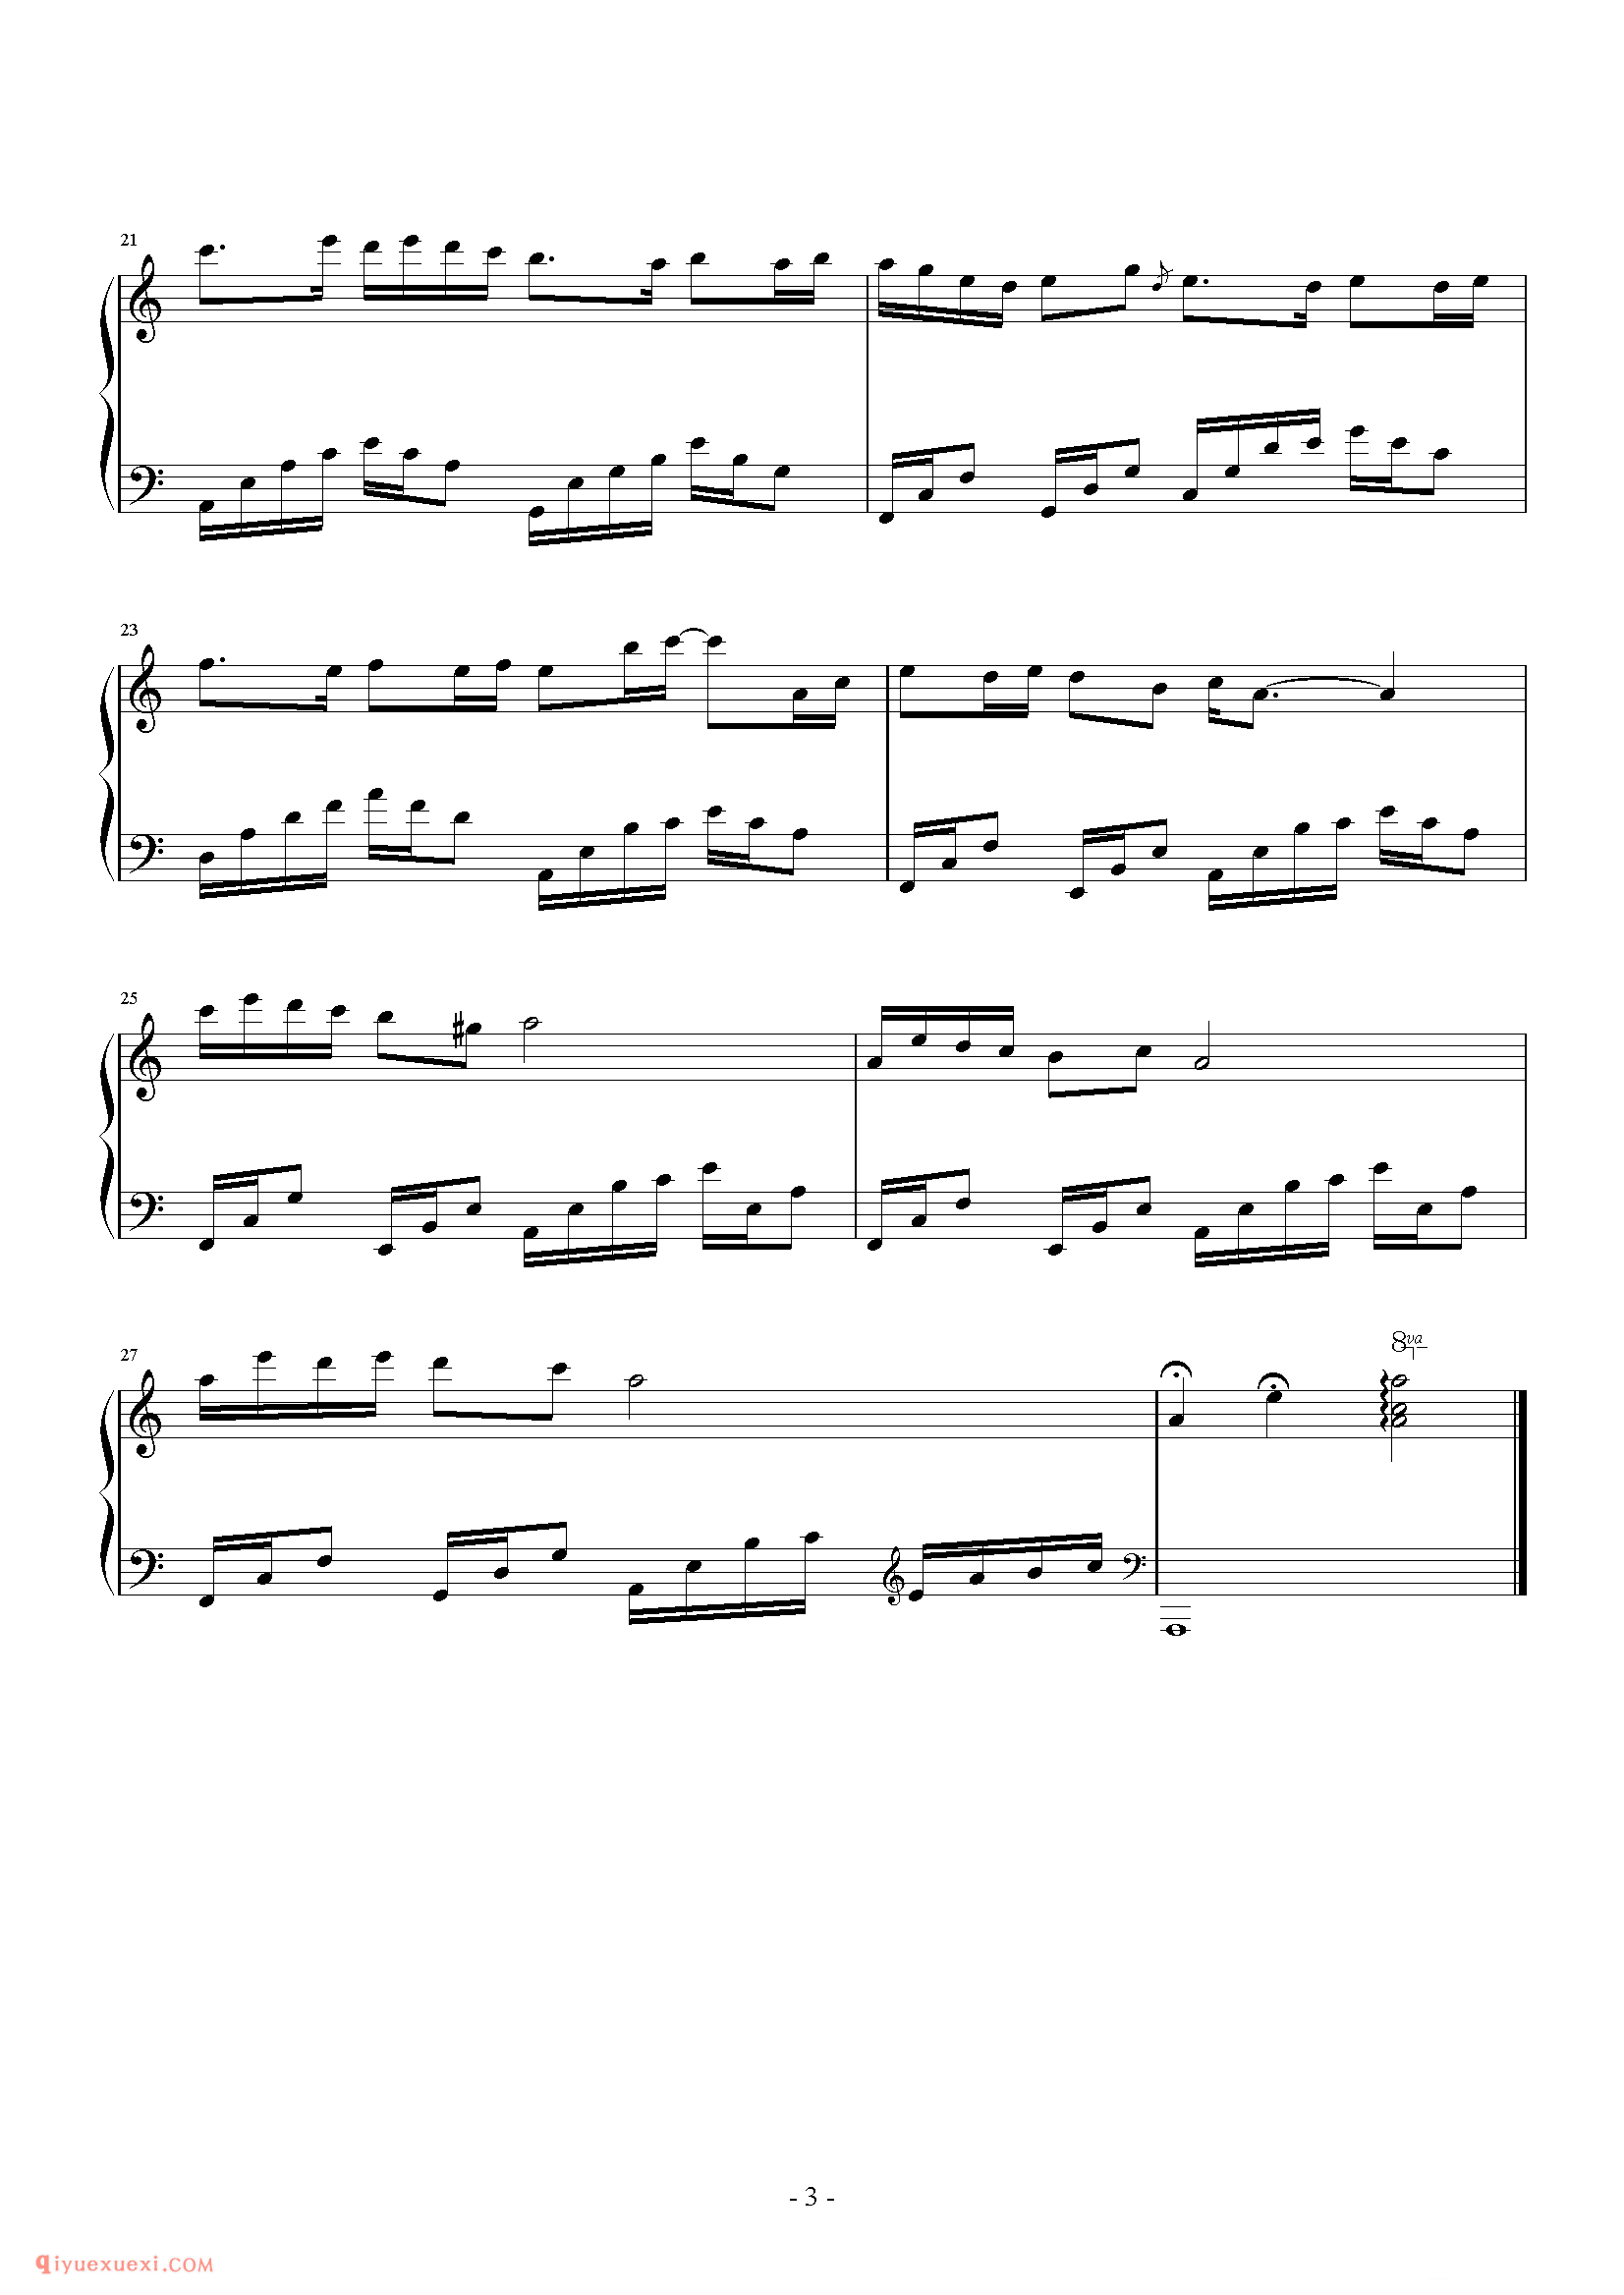 石进《夜的钢琴曲》第12首_石进夜的钢琴曲(12)五线谱